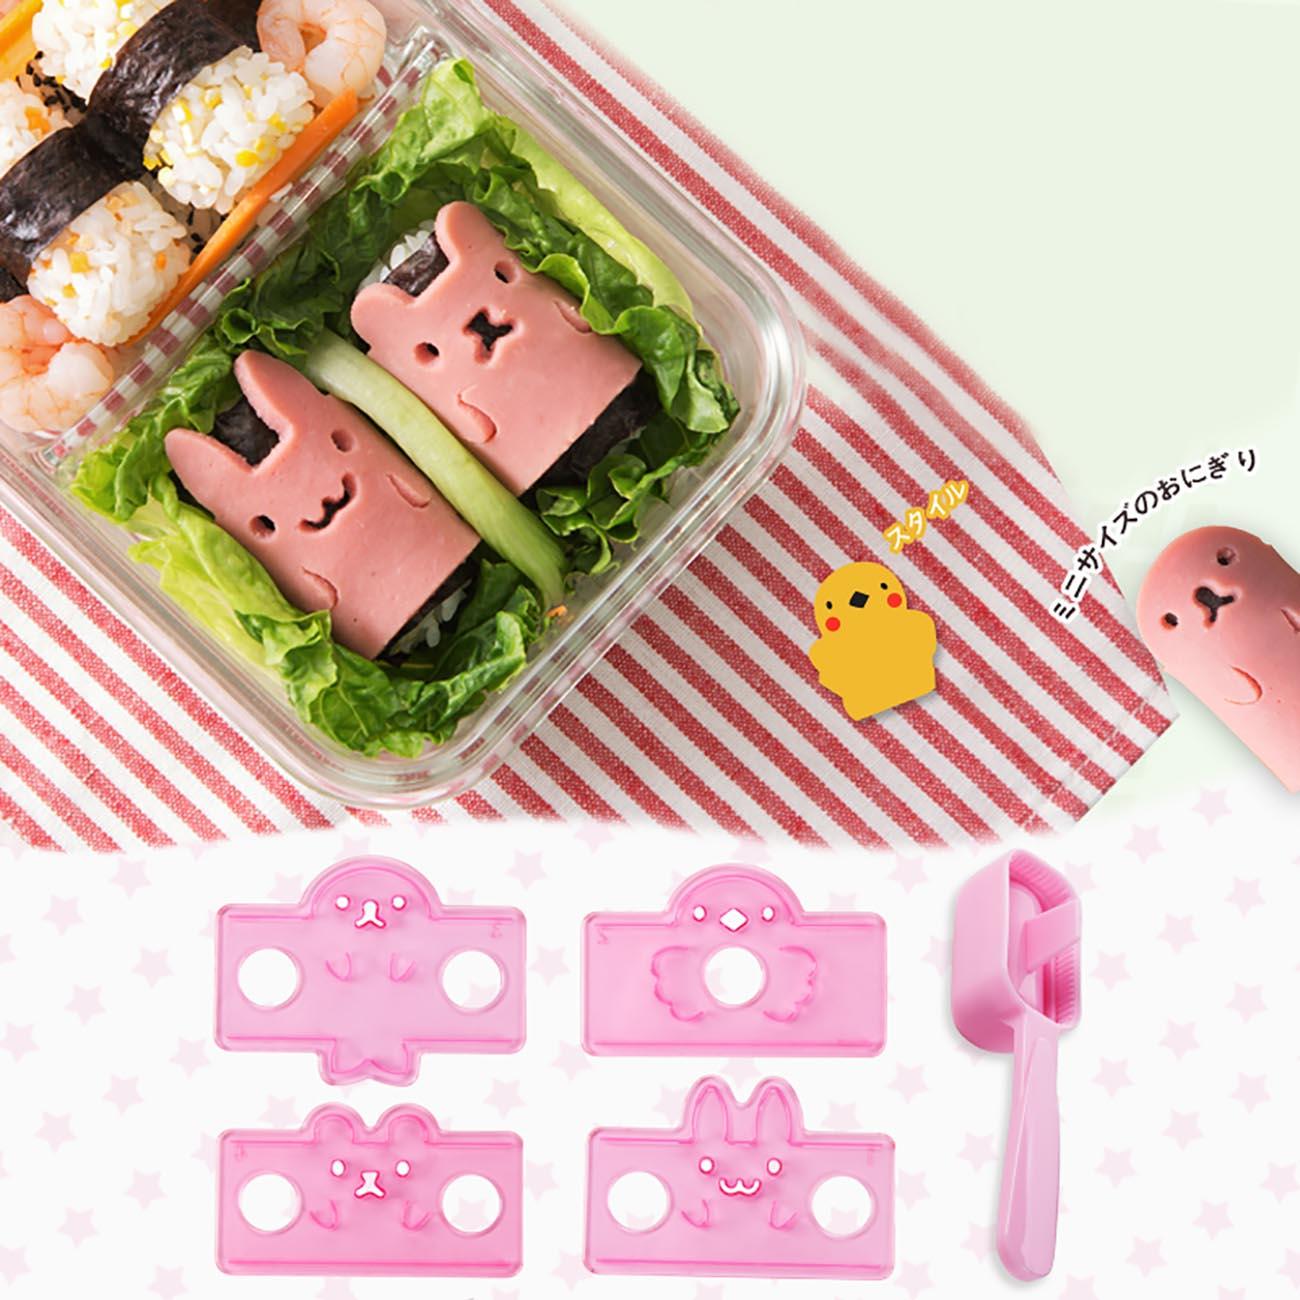 5 stk / sæt tegneserie sushi maker ris skimmel køkken diy skimmel gadget kanin form sushi skimmel børn børn middag